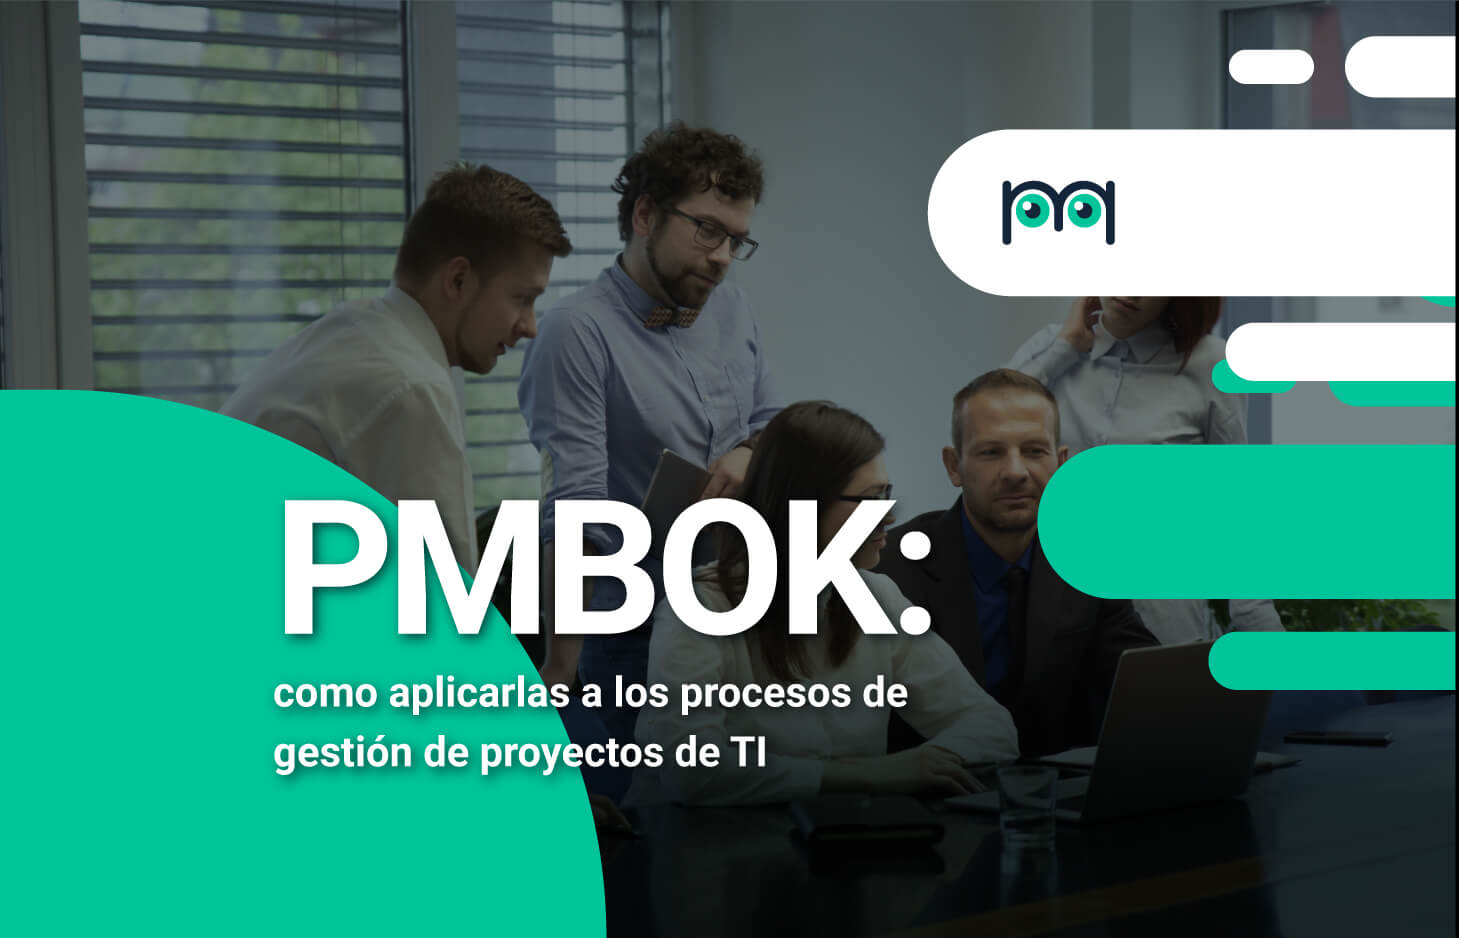 PMBOK: como aplicarlas a los procesos de gestión de proyectos TI